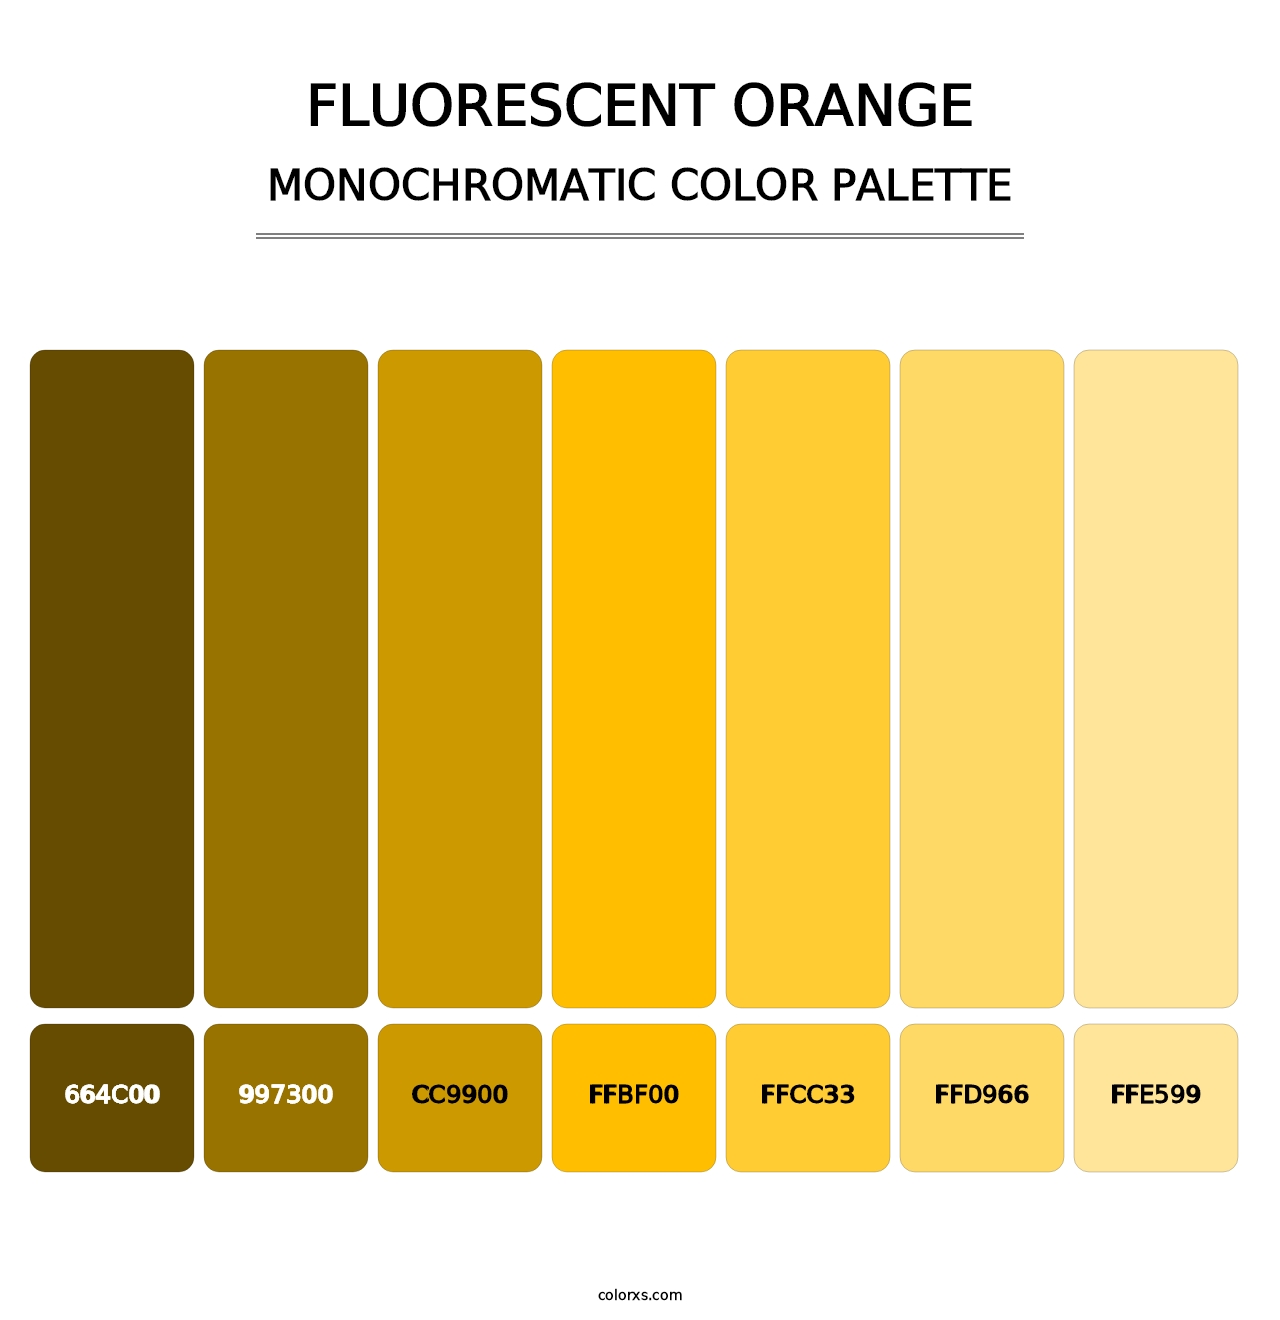 Fluorescent Orange - Monochromatic Color Palette